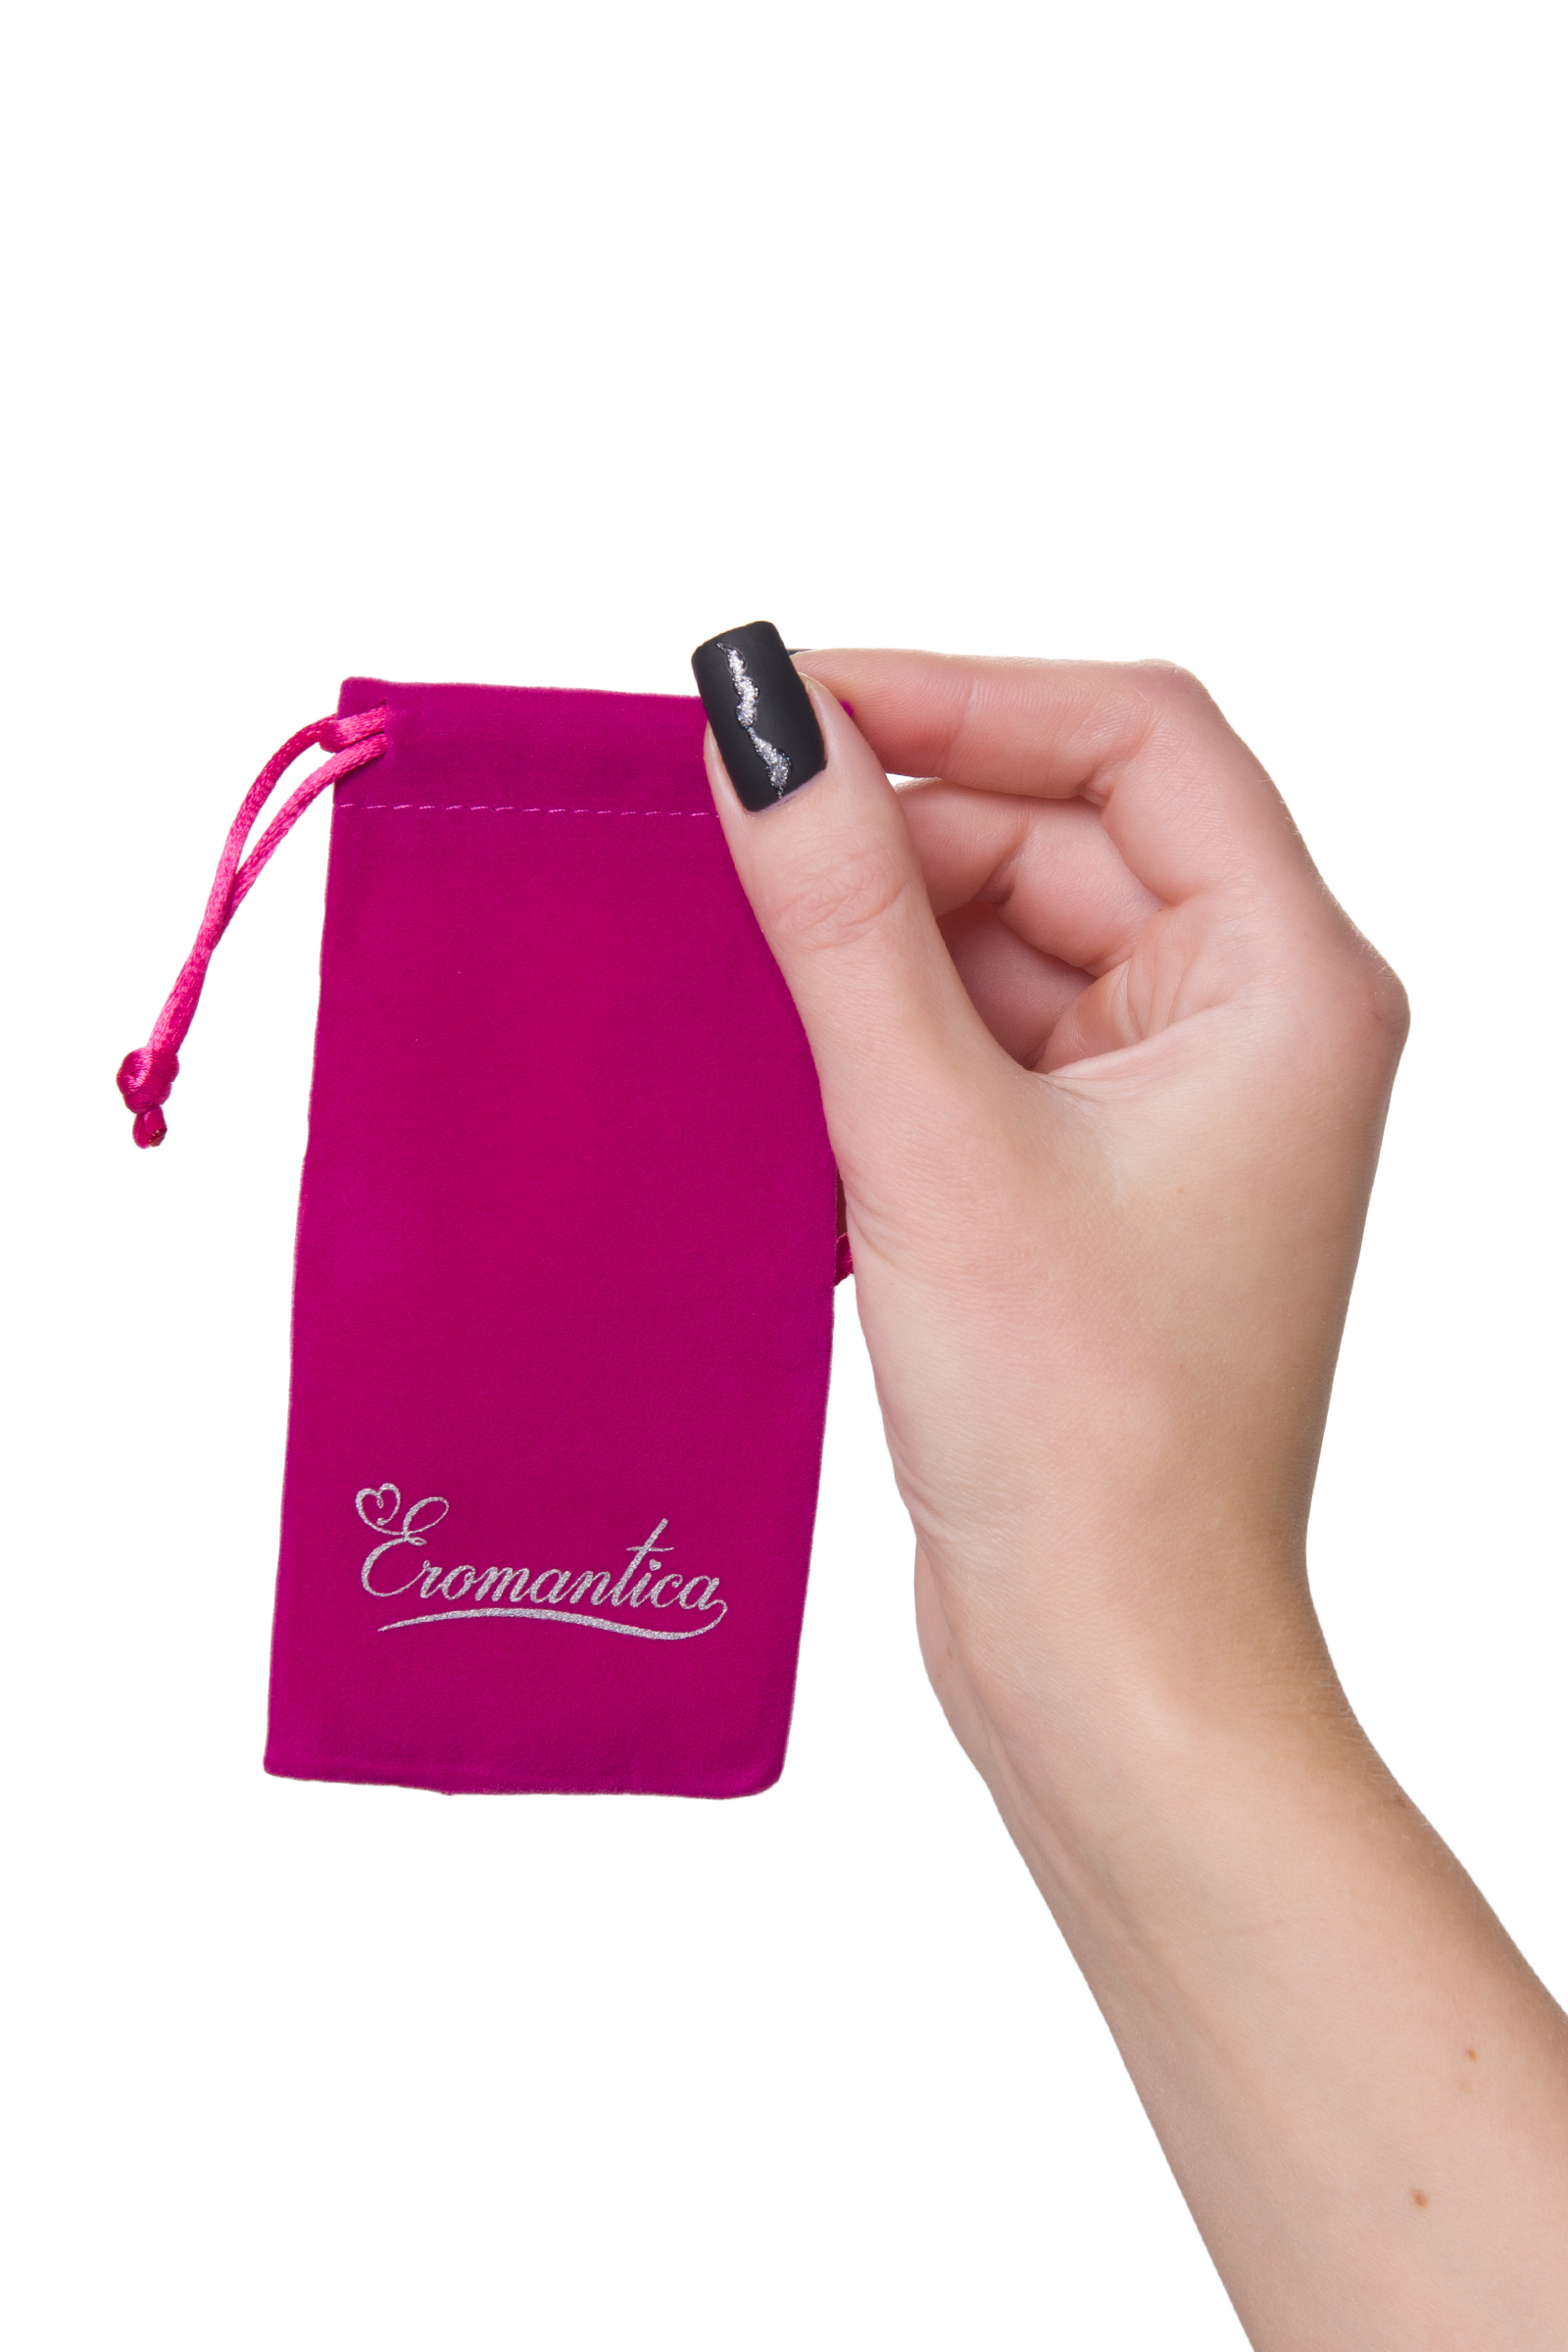 Набор мешочков Eromantica для хранения секс-игрушек 5 шт, розовые